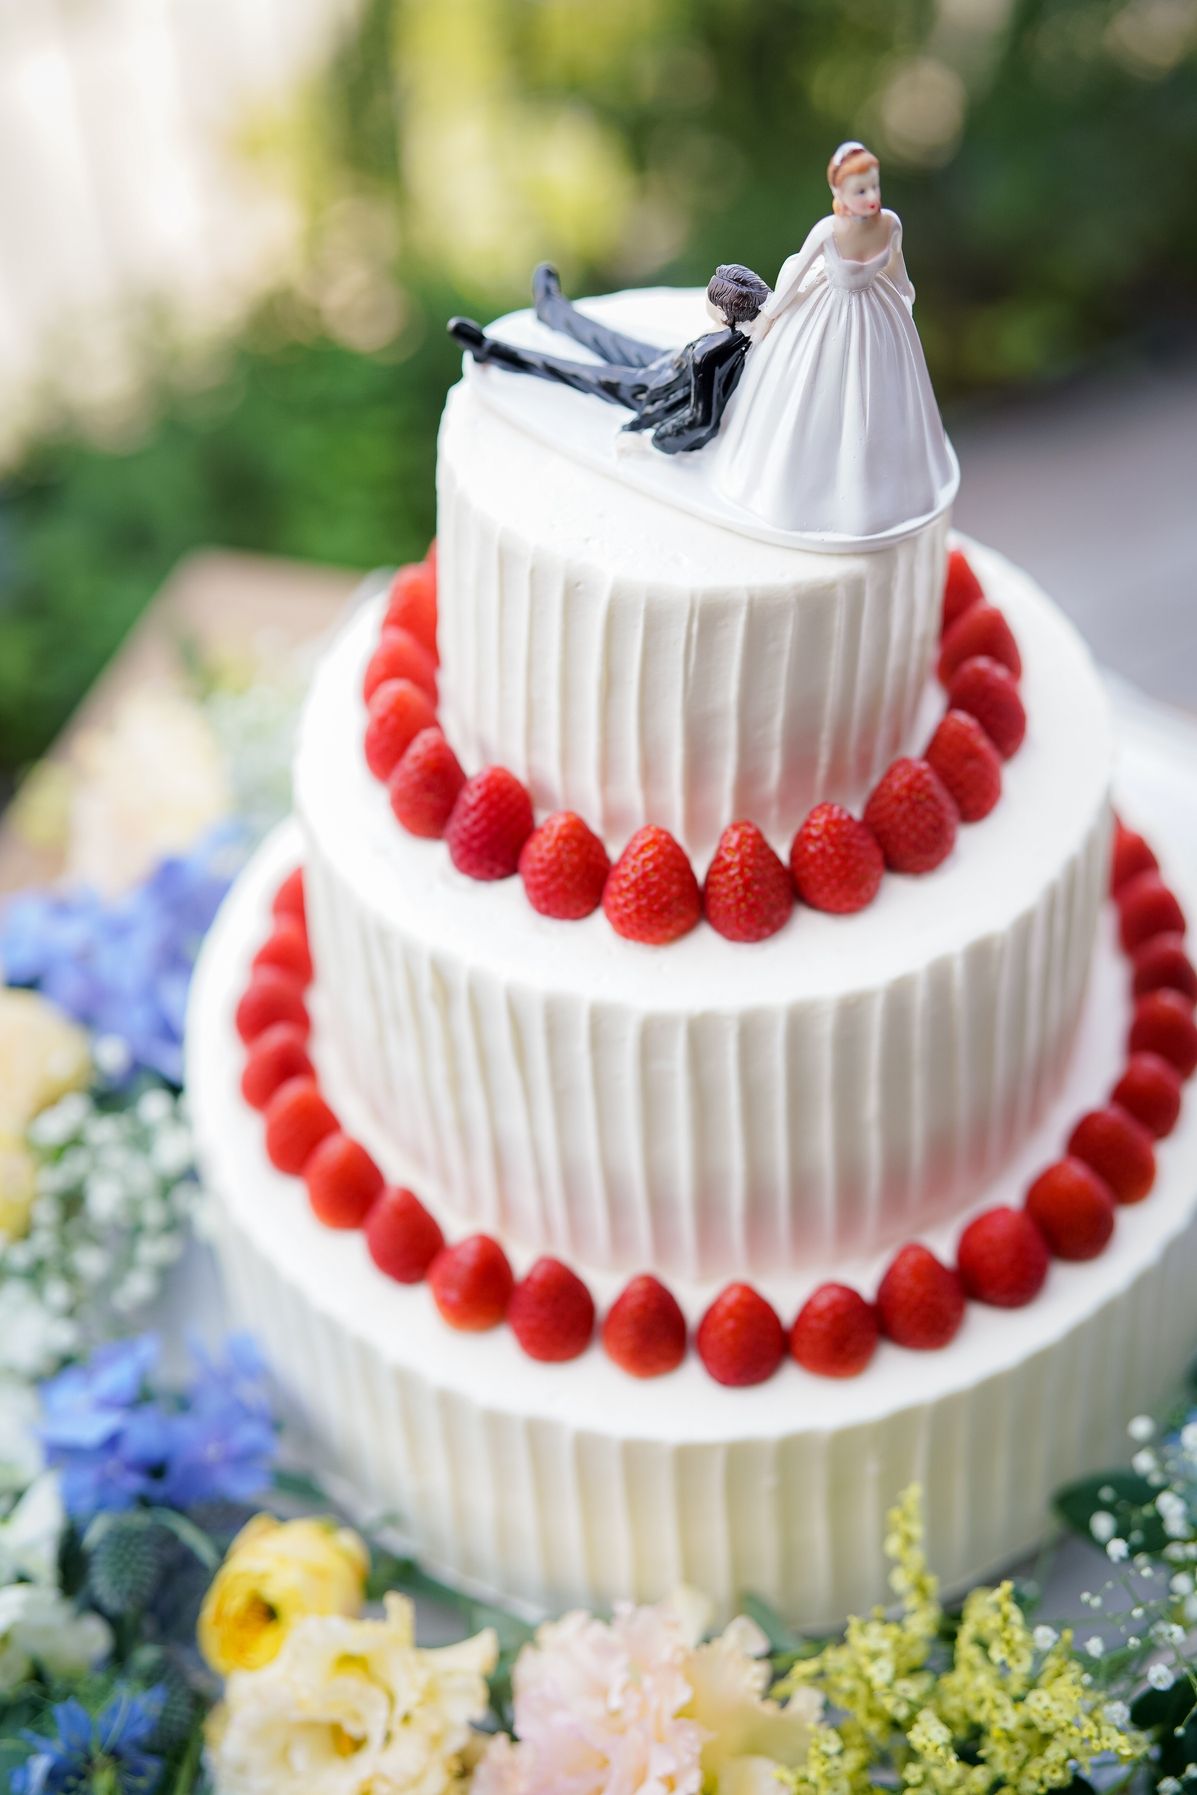 ウェディングケーキ こだわりつつ予算内に抑える 7つの節約術 結婚式準備はウェディングニュース